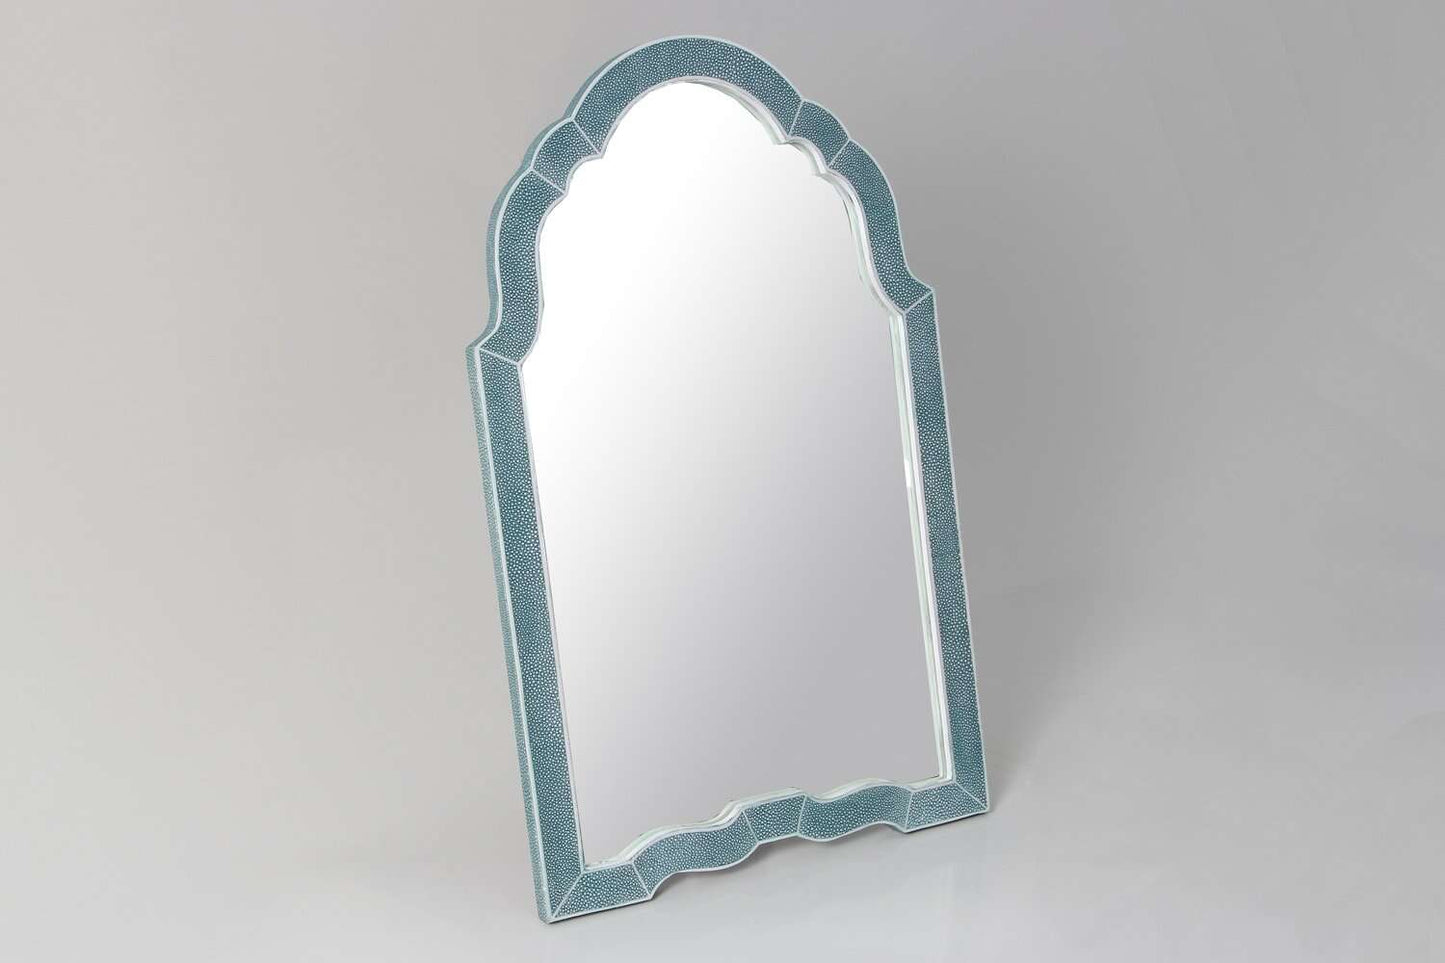  https://forwooddesign.com/app/uploads/2019/07/Teal-shagreen-dressing-table-mirror-3.jpg